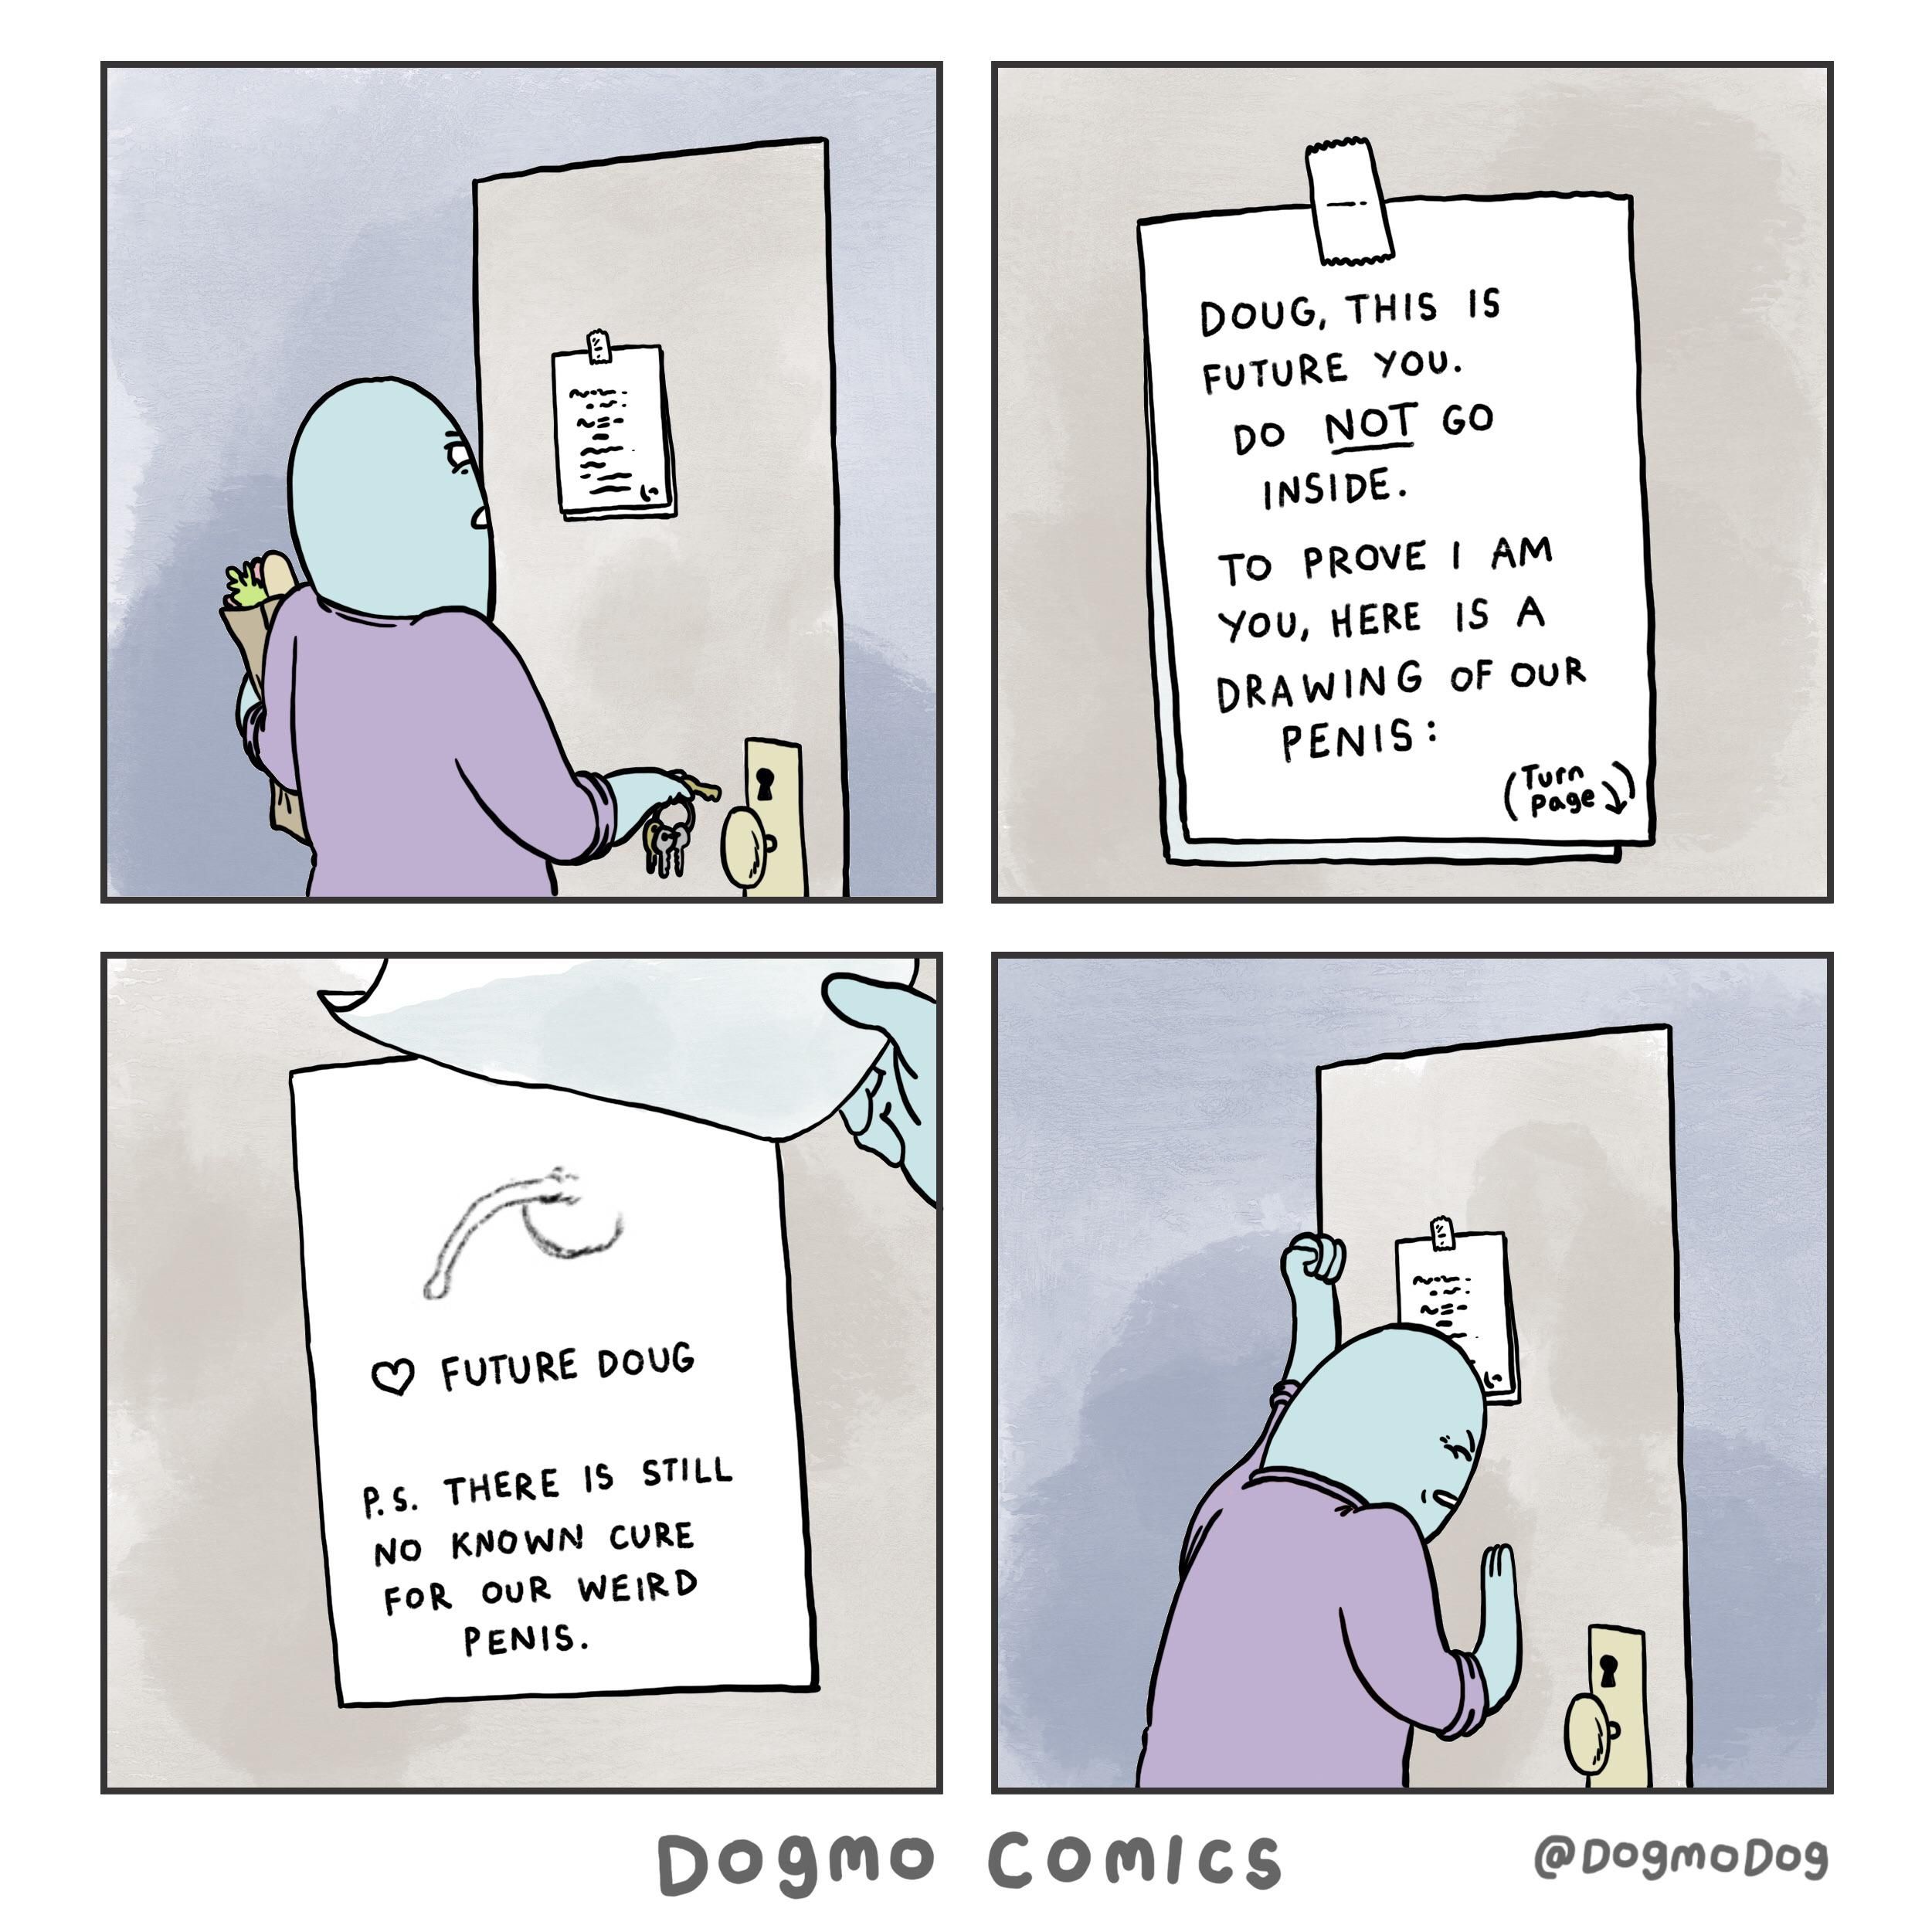 Dear Doug